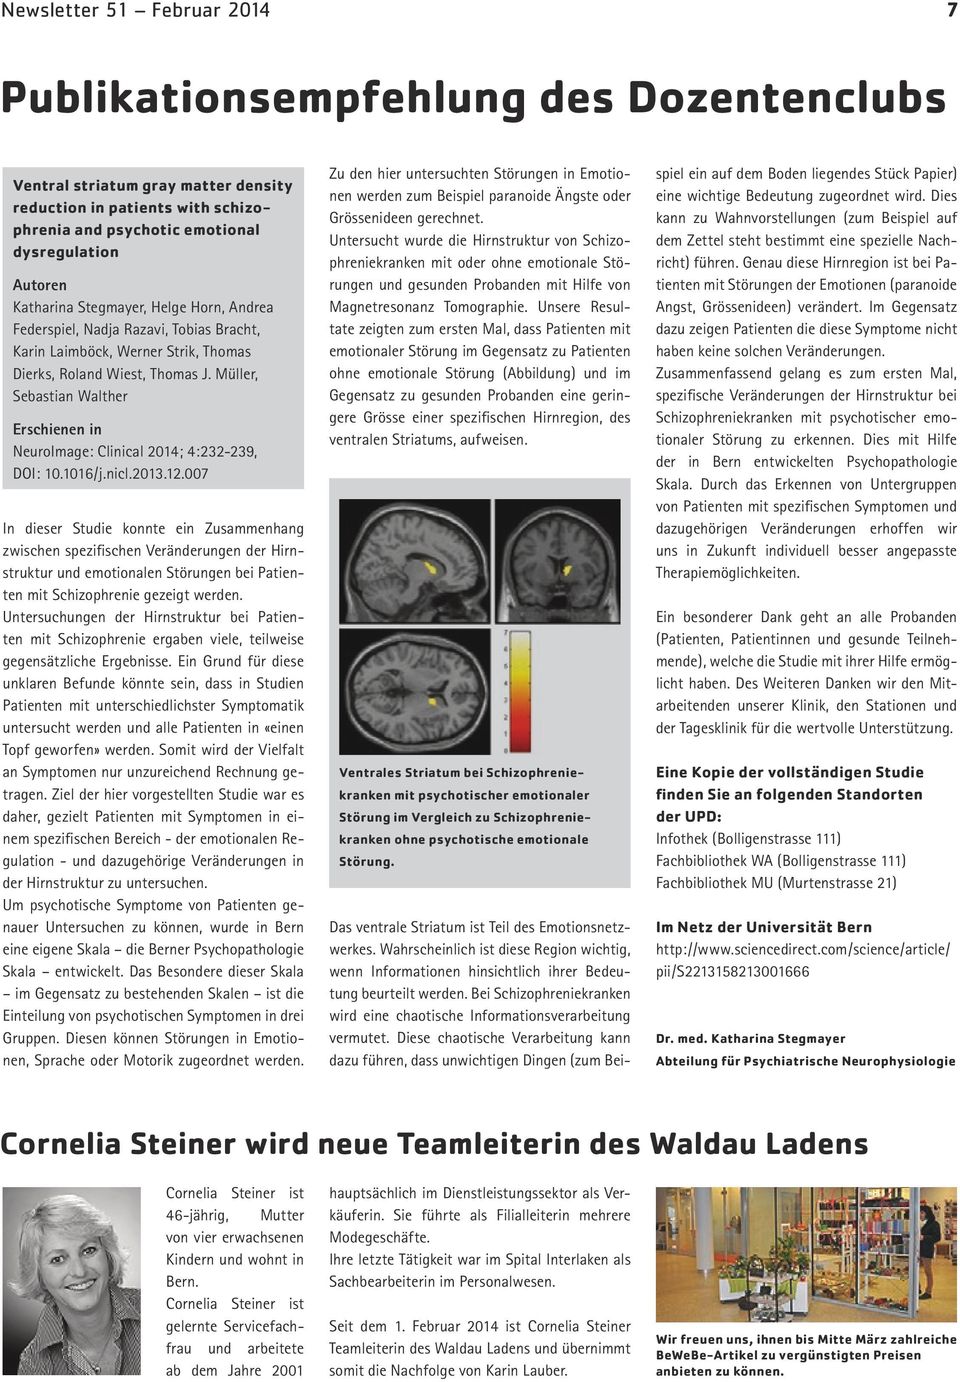 Müller, Sebastian Walther Erschienen in NeuroImage: Clinical 2014; 4:232-239, DOI: 10.1016/j.nicl.2013.12.